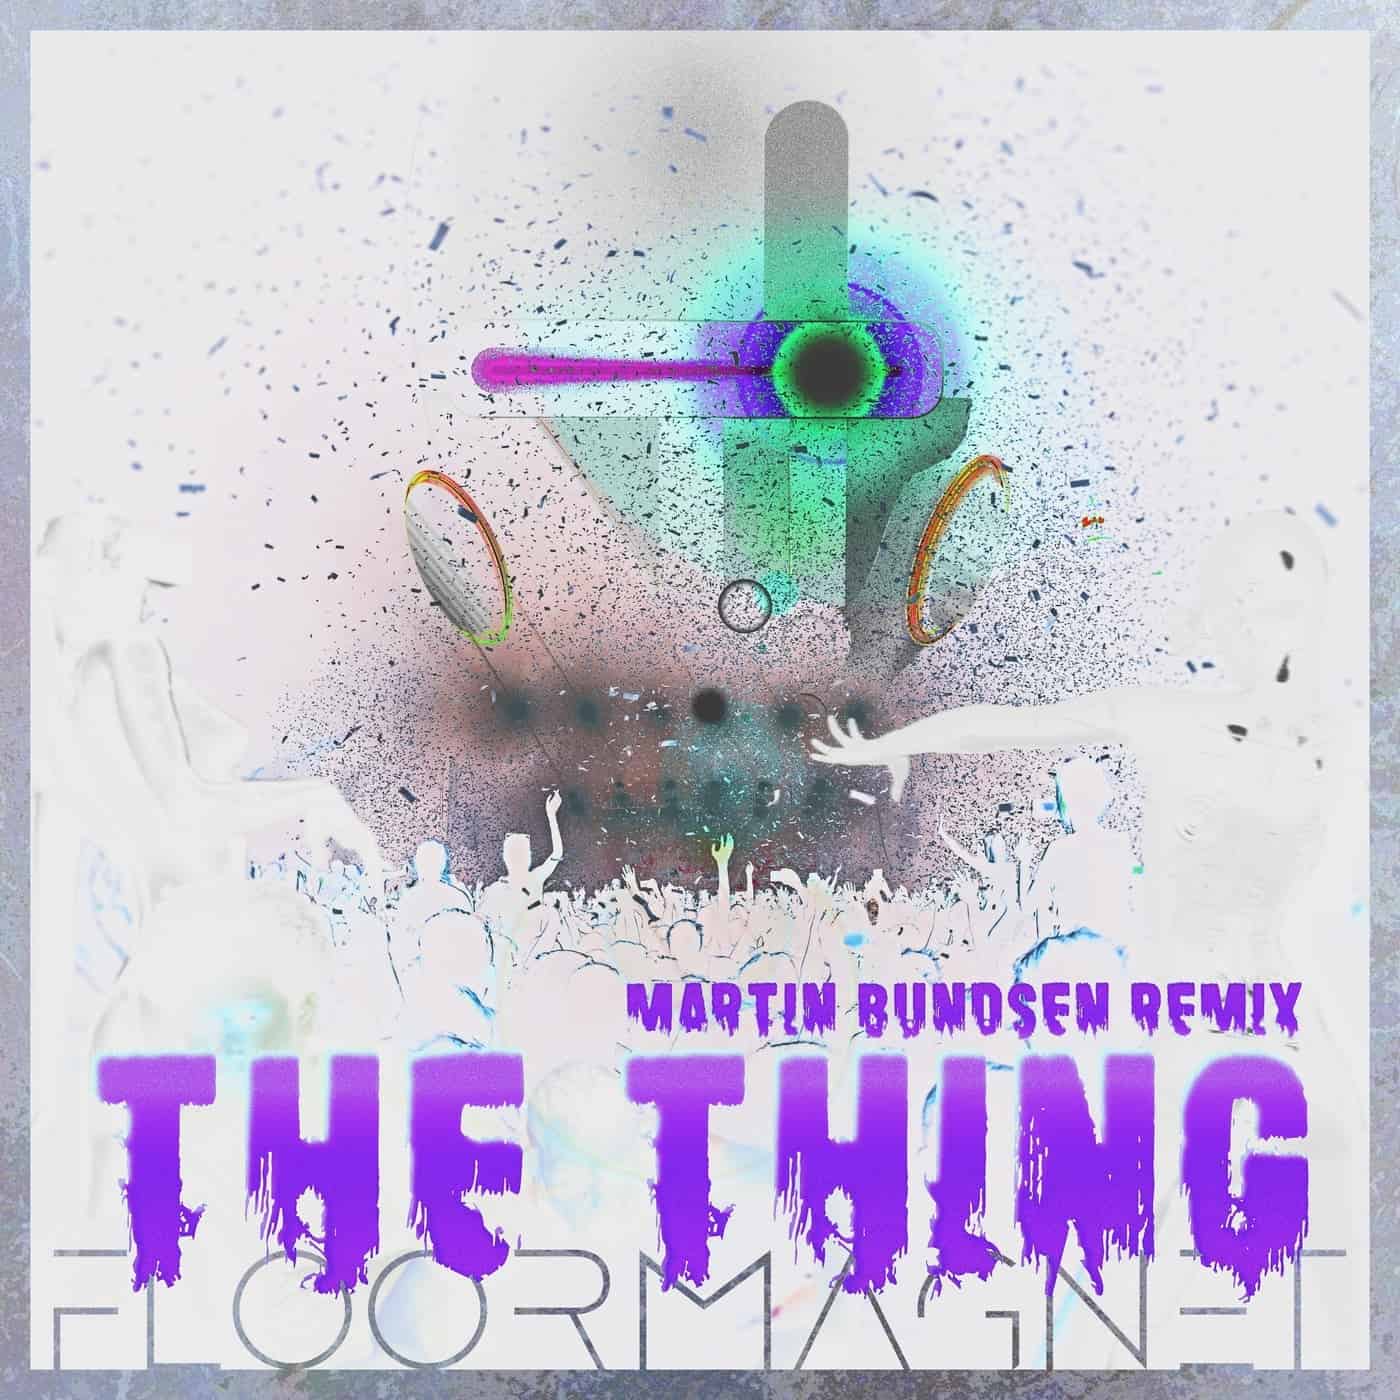 Download The Thing (Martin Bundsen Remix) on Electrobuzz